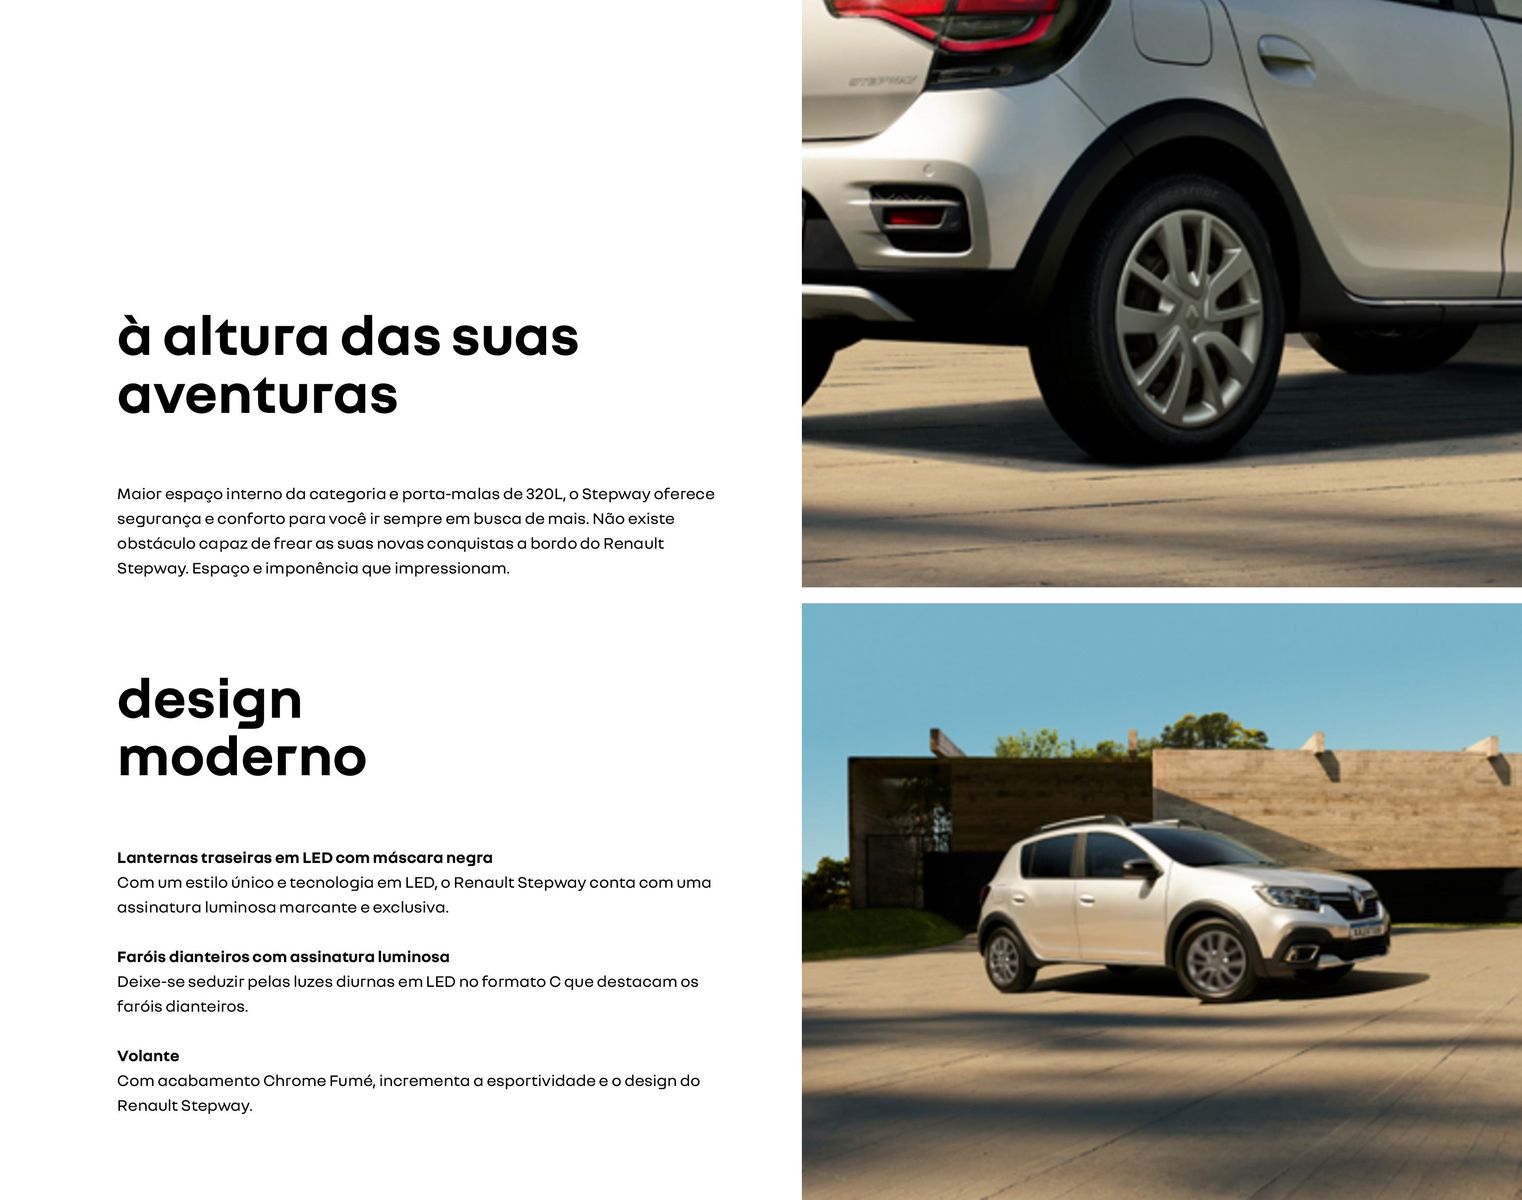 Renault Stepway - Segurança, Conforto e Design Moderno